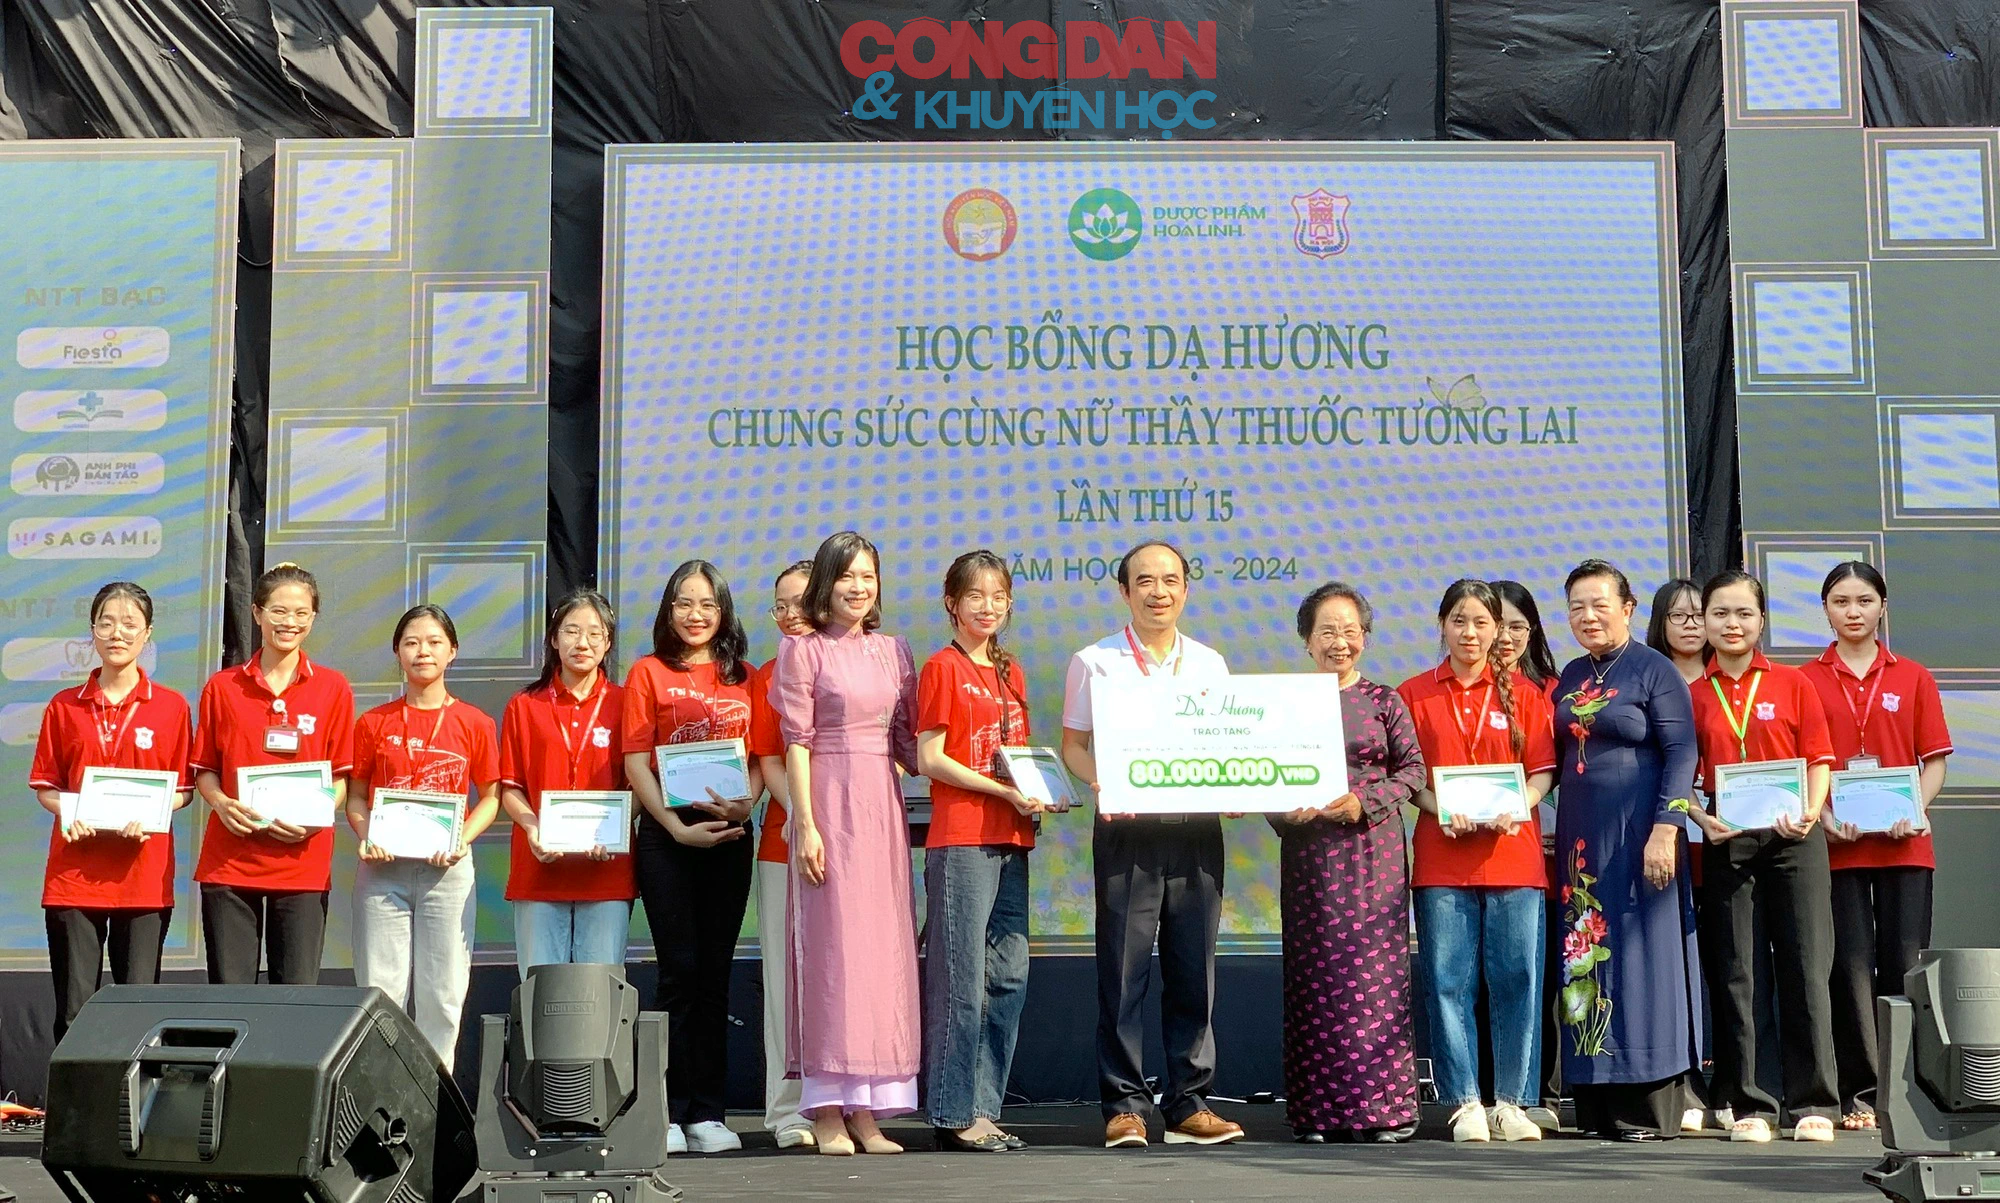 Hội Khuyến học Việt Nam trao 80 triệu đồng học bổng "Chung sức cùng nữ thầy thuốc tương lai"- Ảnh 2.